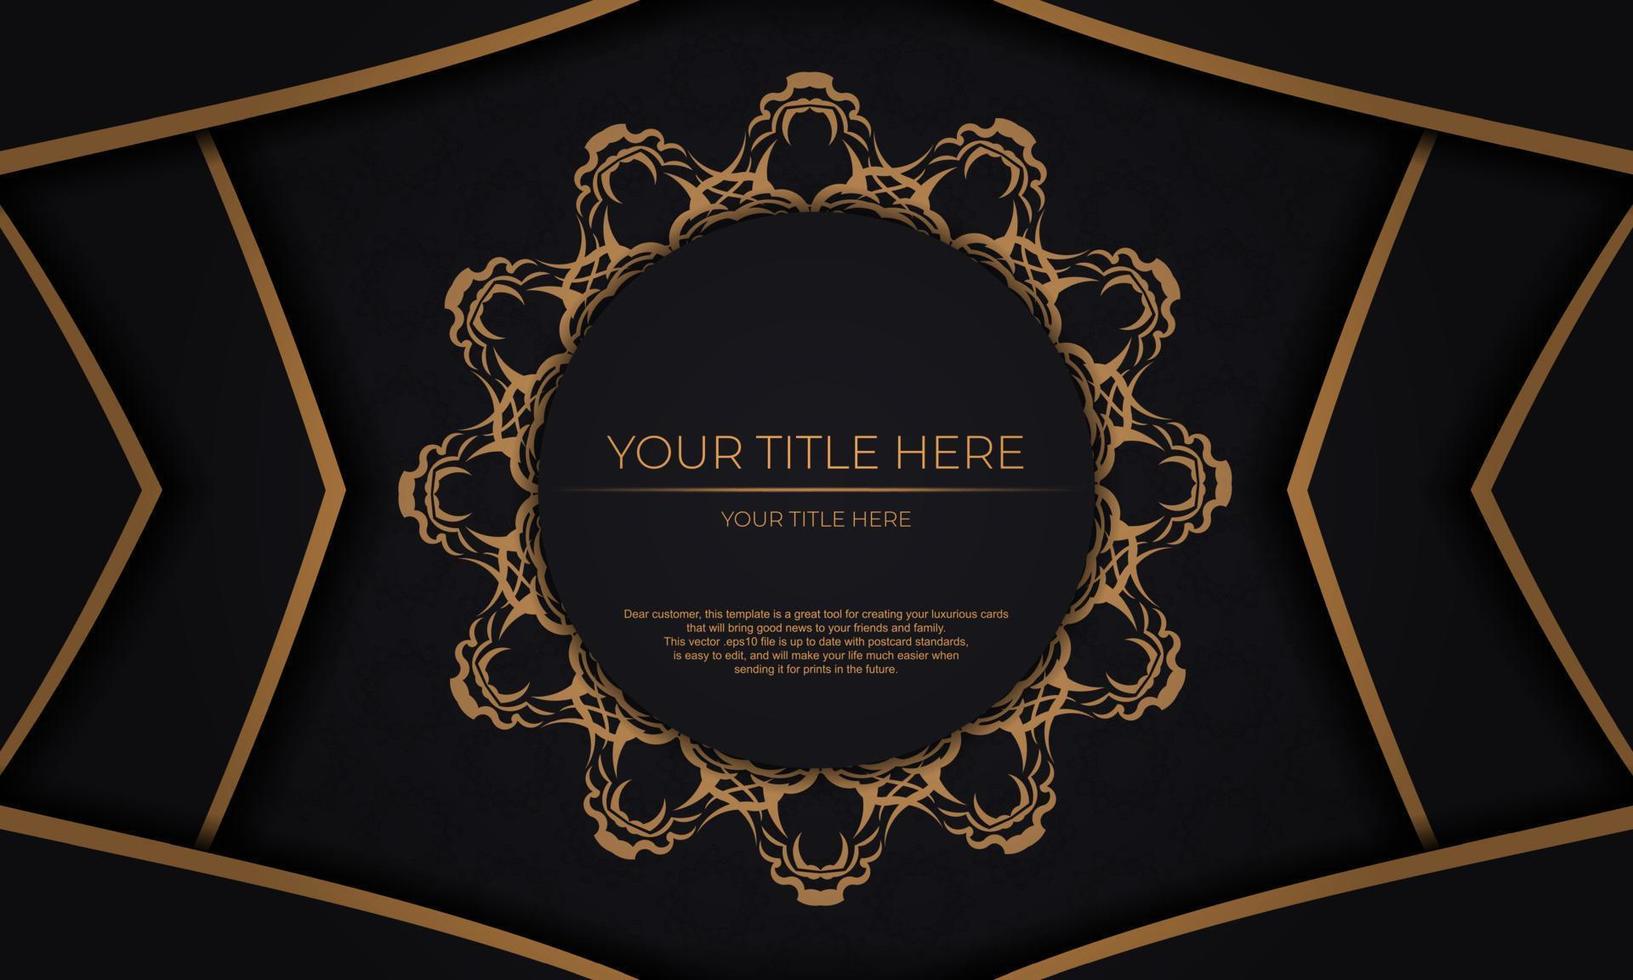 zwart vector achtergrond met luxe goud ornamenten en plaats voor uw ontwerp. uitnodiging kaart ontwerp met wijnoogst ornament.